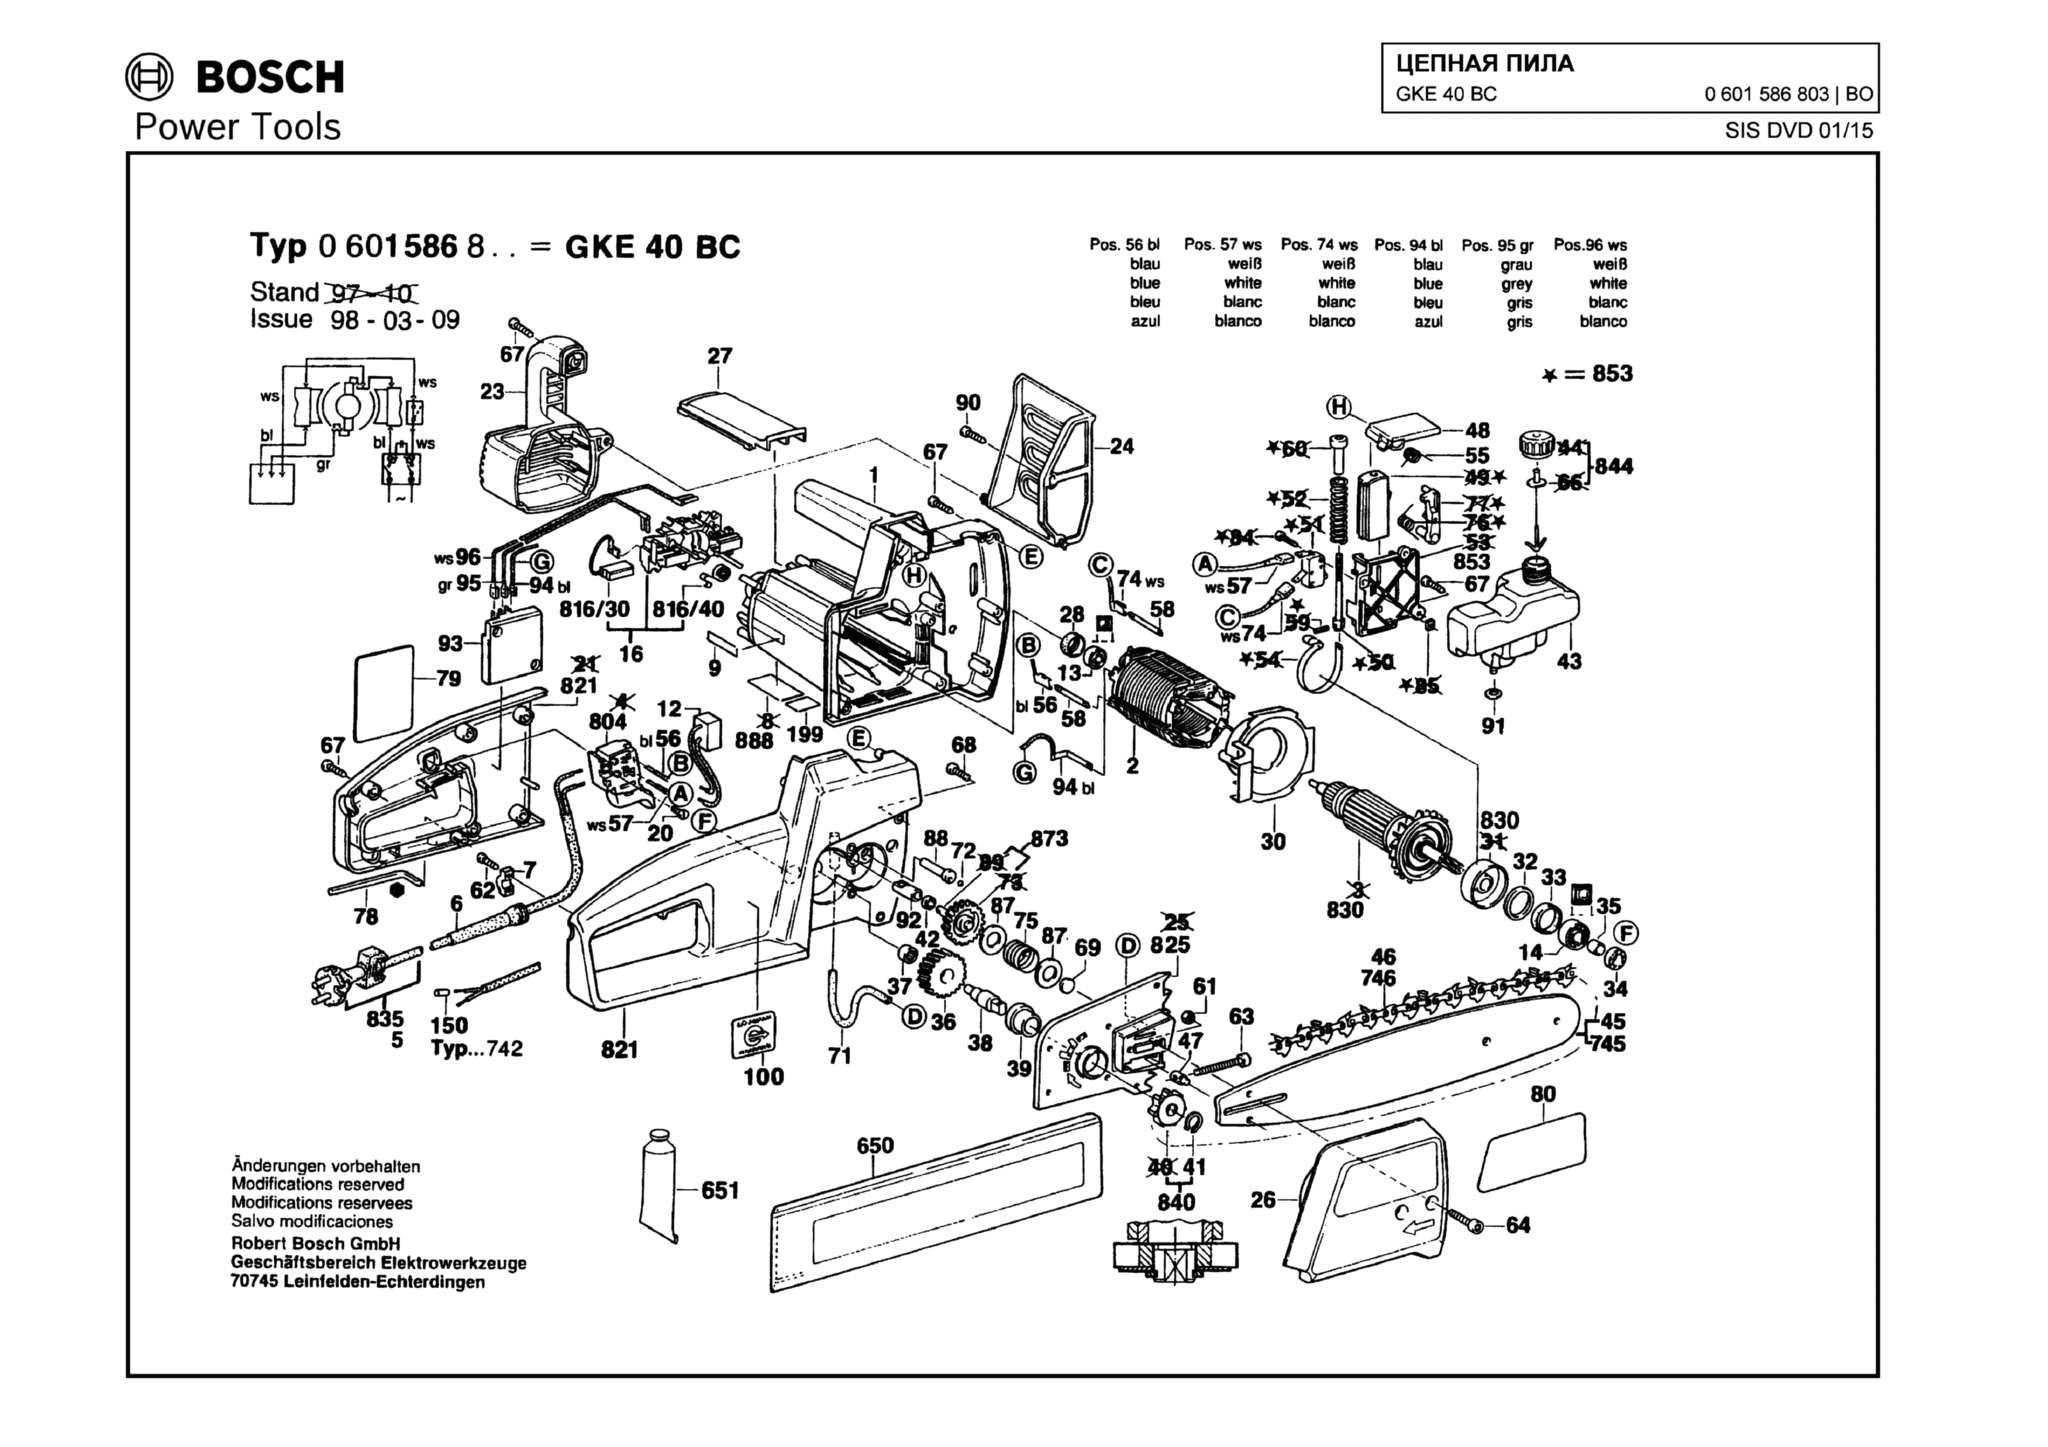 Запчасти, схема и деталировка Bosch GKE 40 BC (ТИП 0601586803)